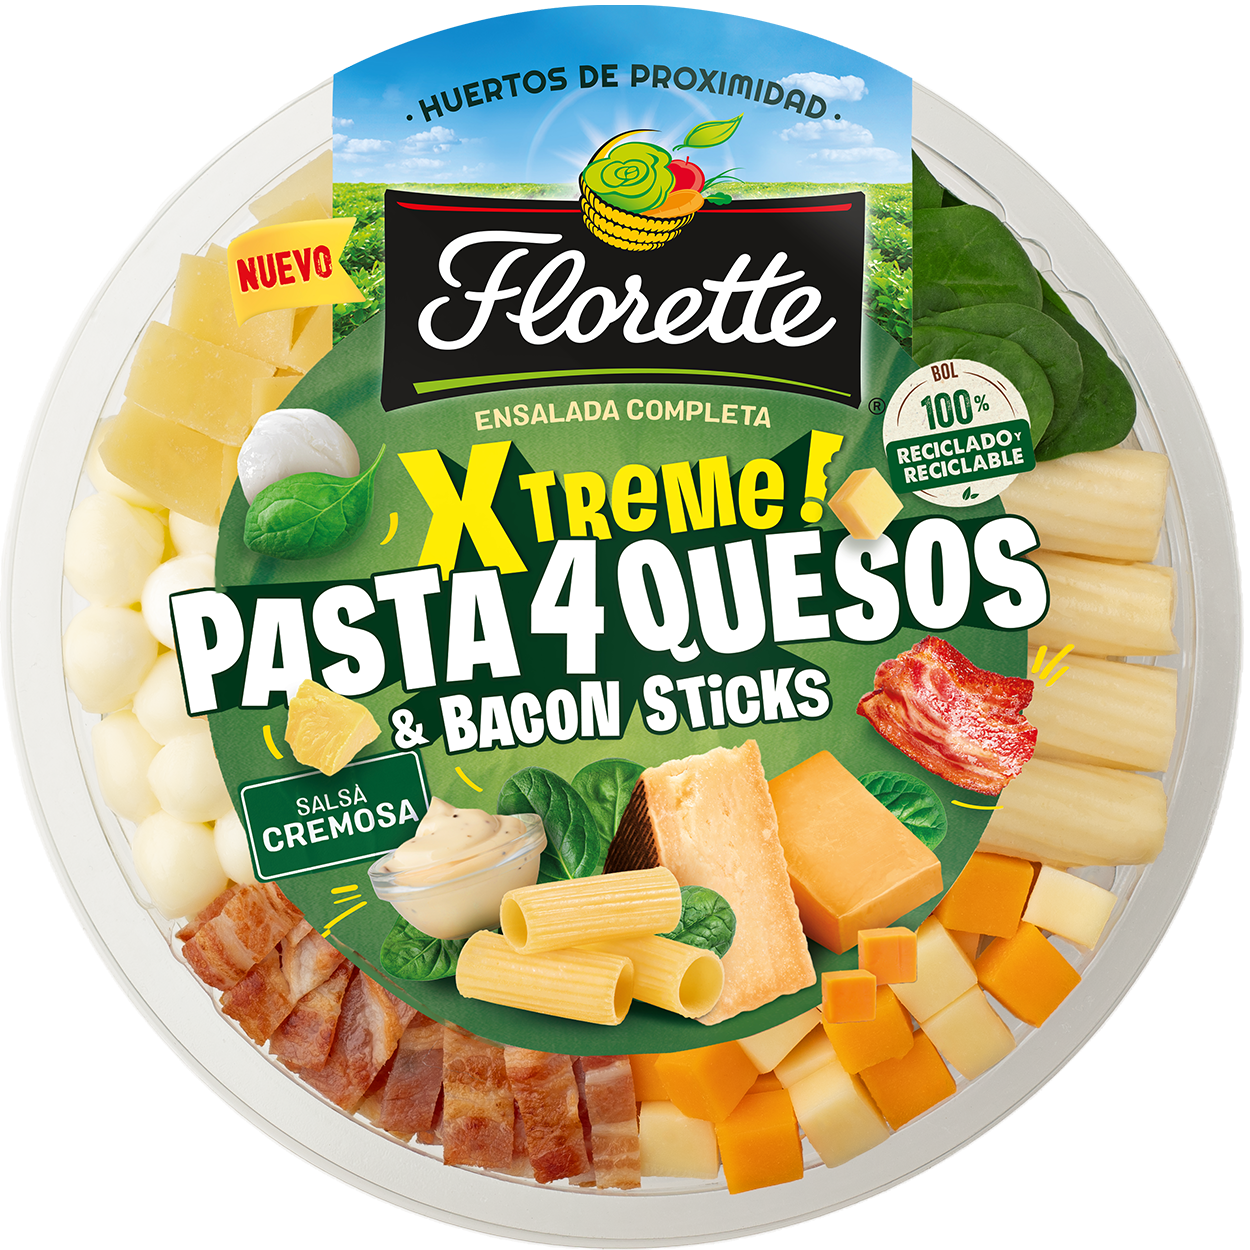 Florette amplía su gama de ensaladas completas - Financial Food